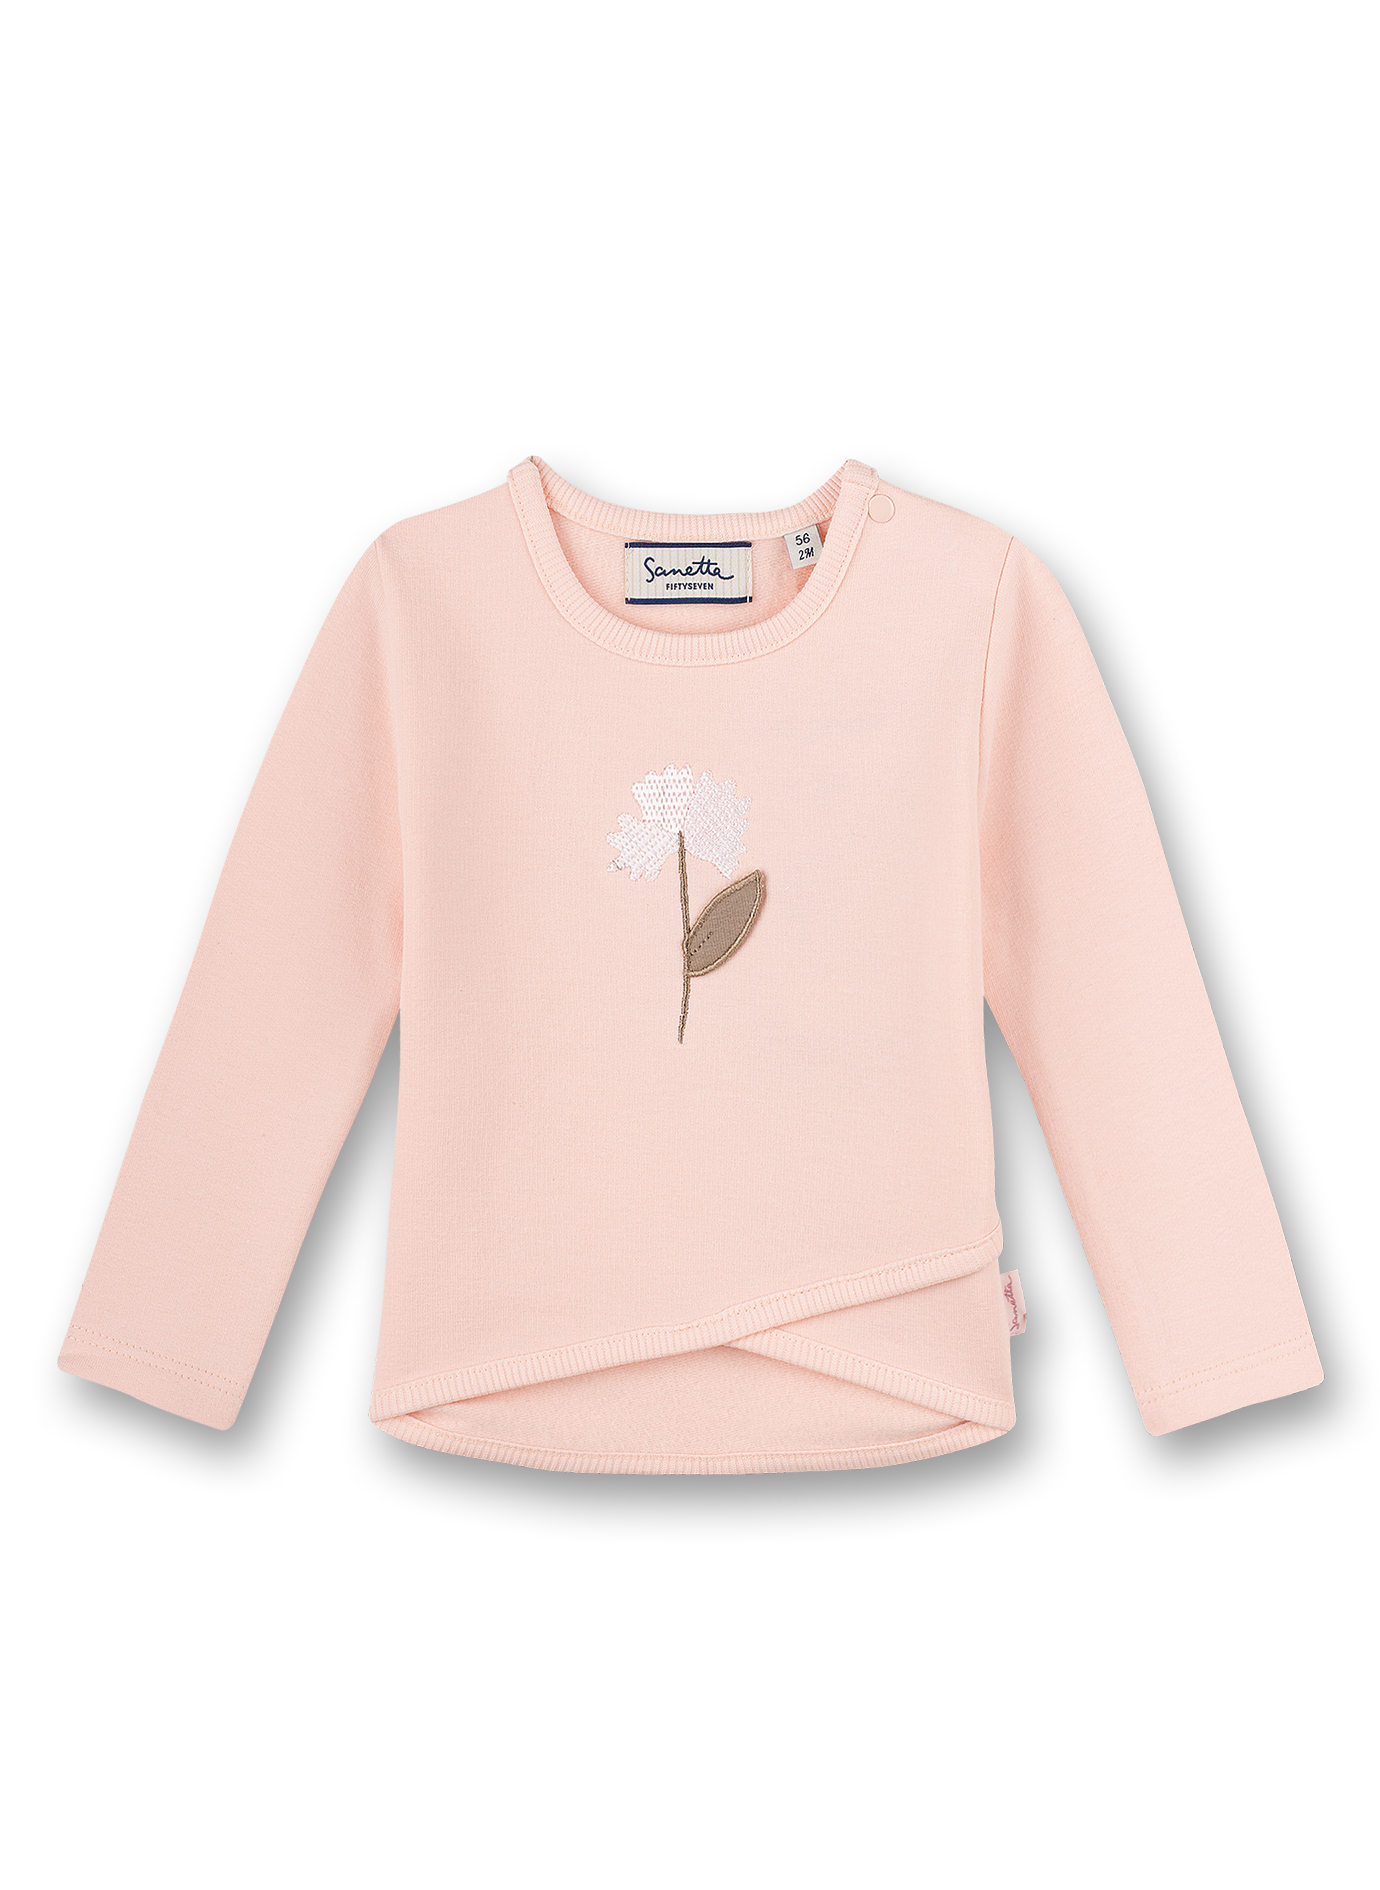 Mädchen-Sweatshirt Rosa Family Stork